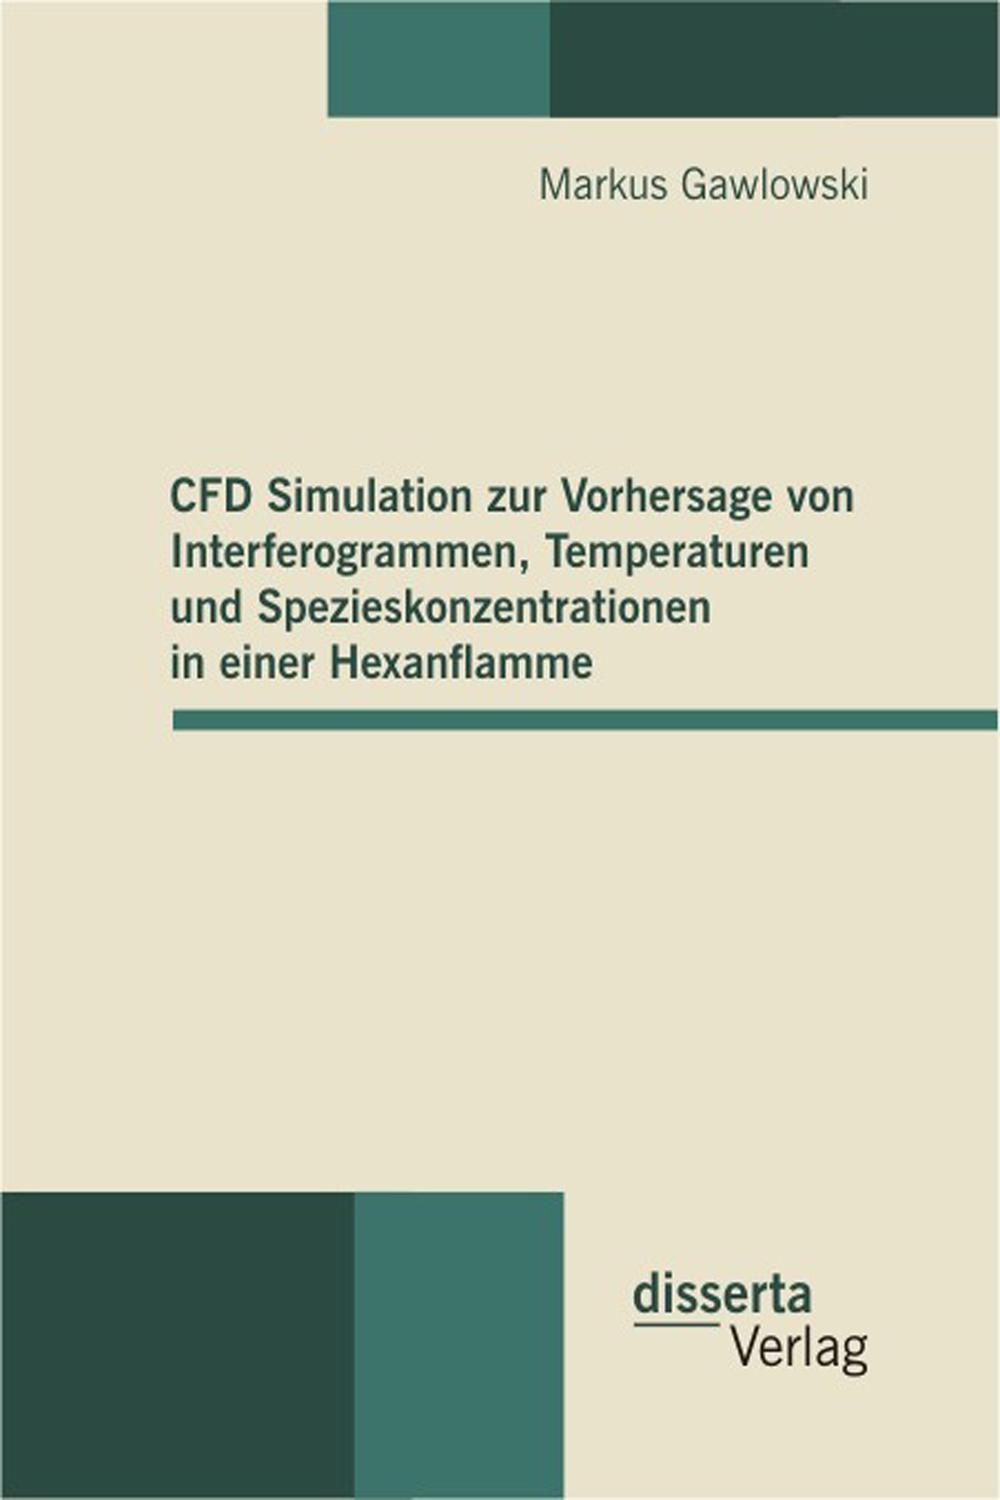 CFD Simulation zur Vorhersage von Interferogrammen, Temperaturen und Spezieskonzentrationen in einer Hexanflamme - Markus Gawlowski